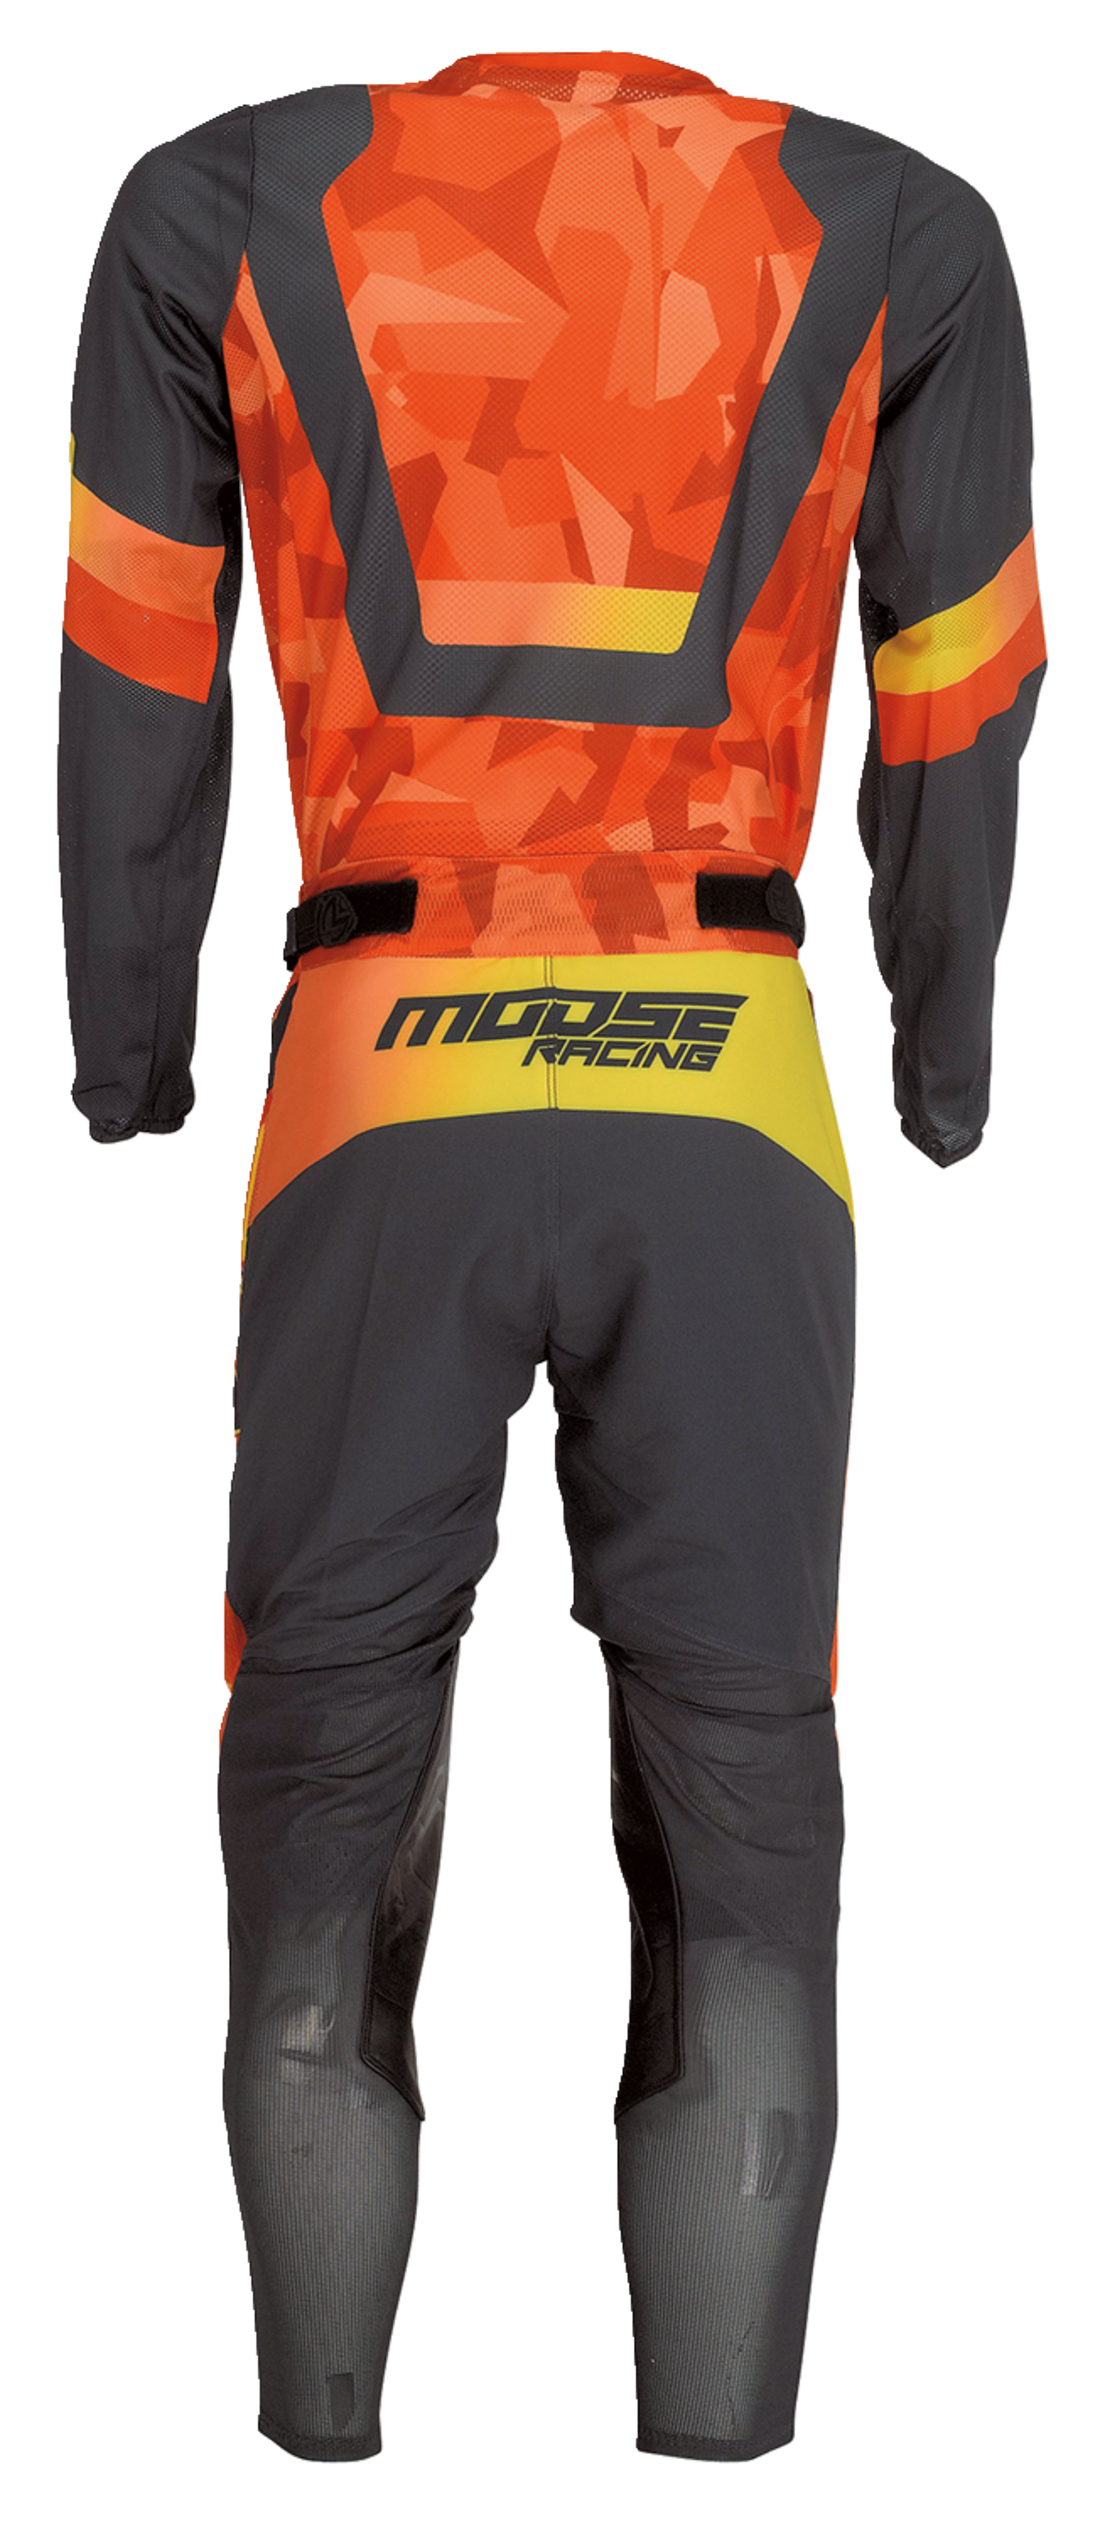 MOOSE RACING Sahara™ Jersey - Orange/Black - Medium 2910-7223